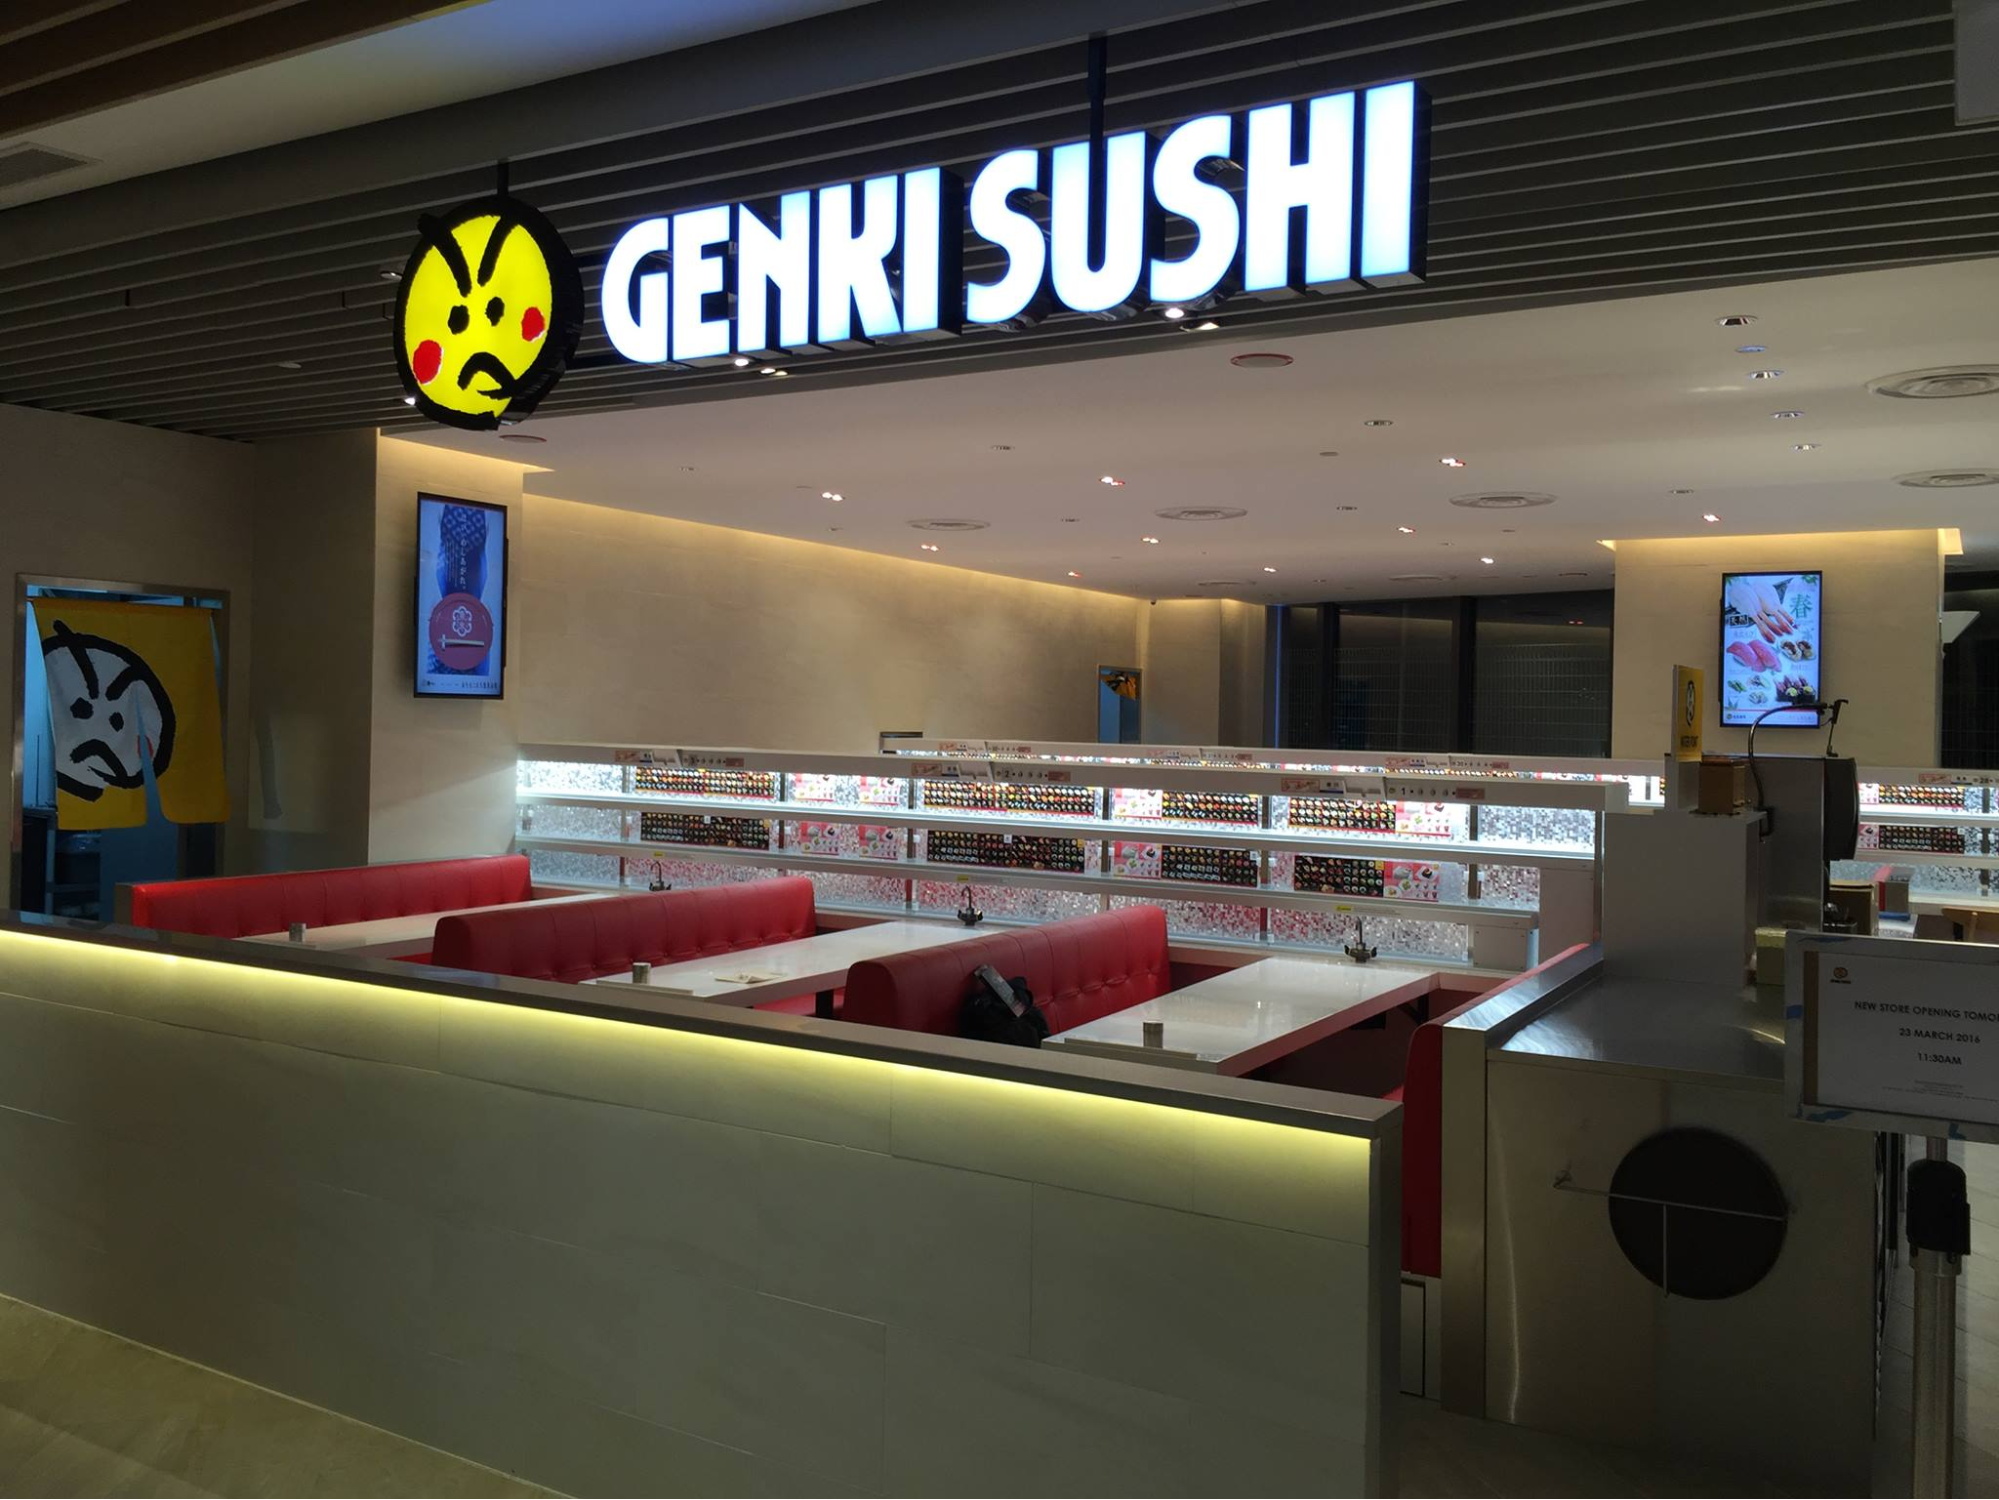 genki sushi logo